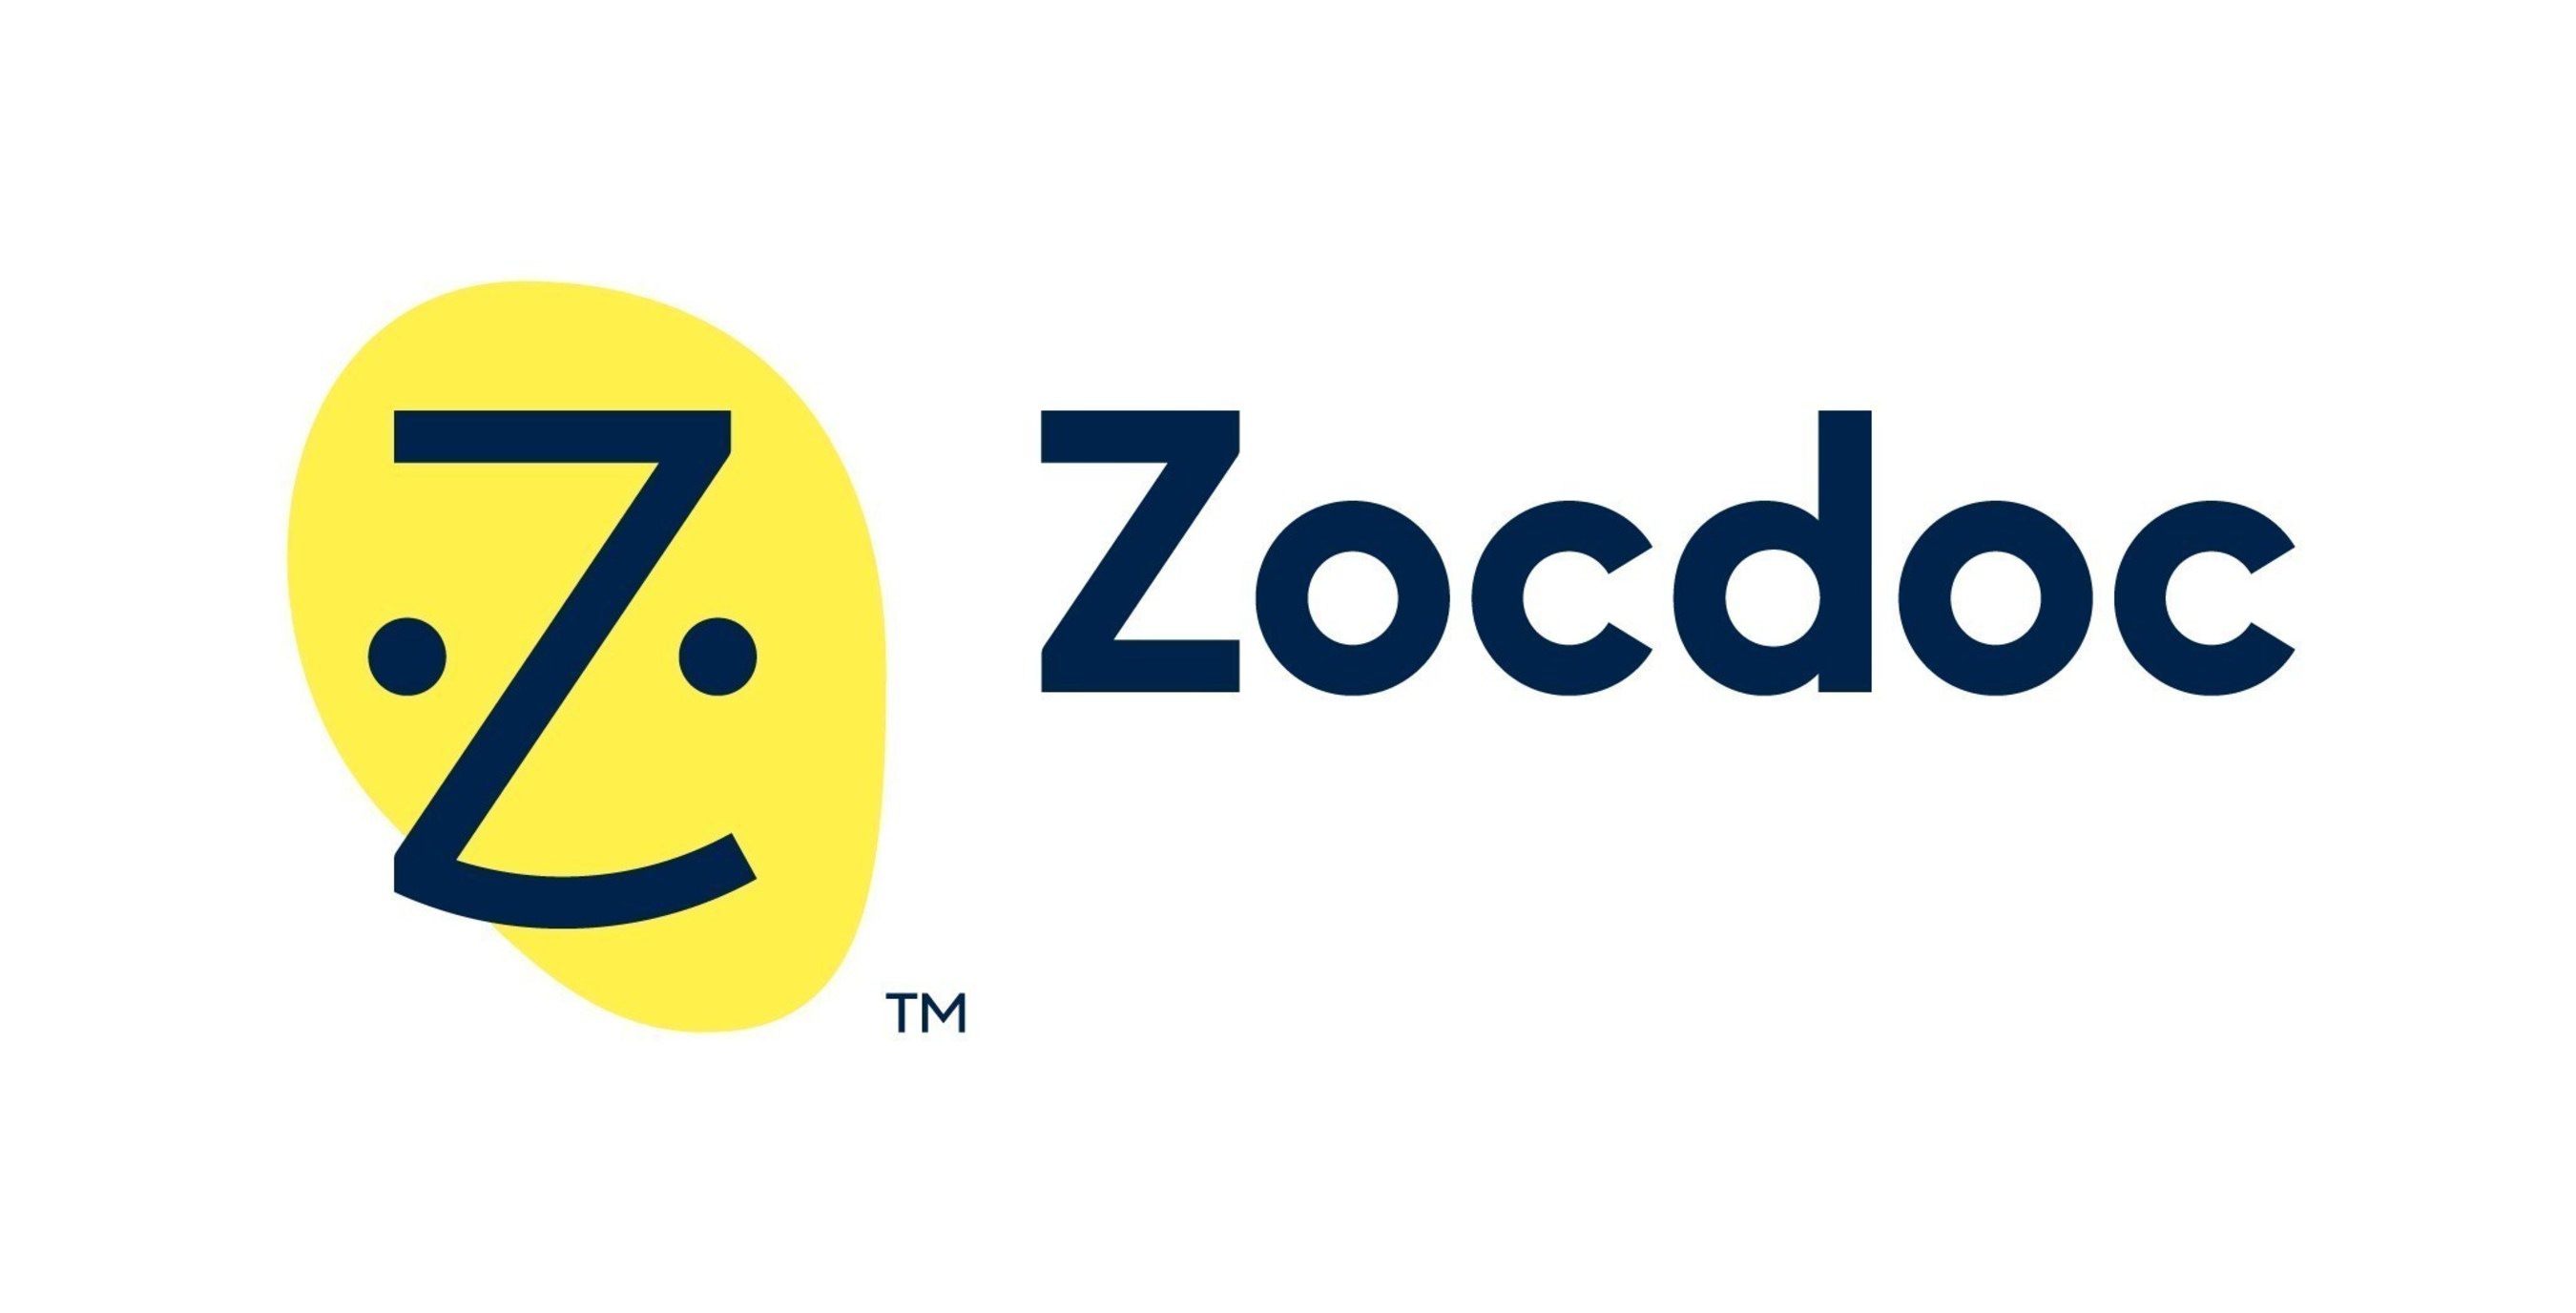 Zocdoc logo and word mark (PRNewsFoto/Zocdoc)